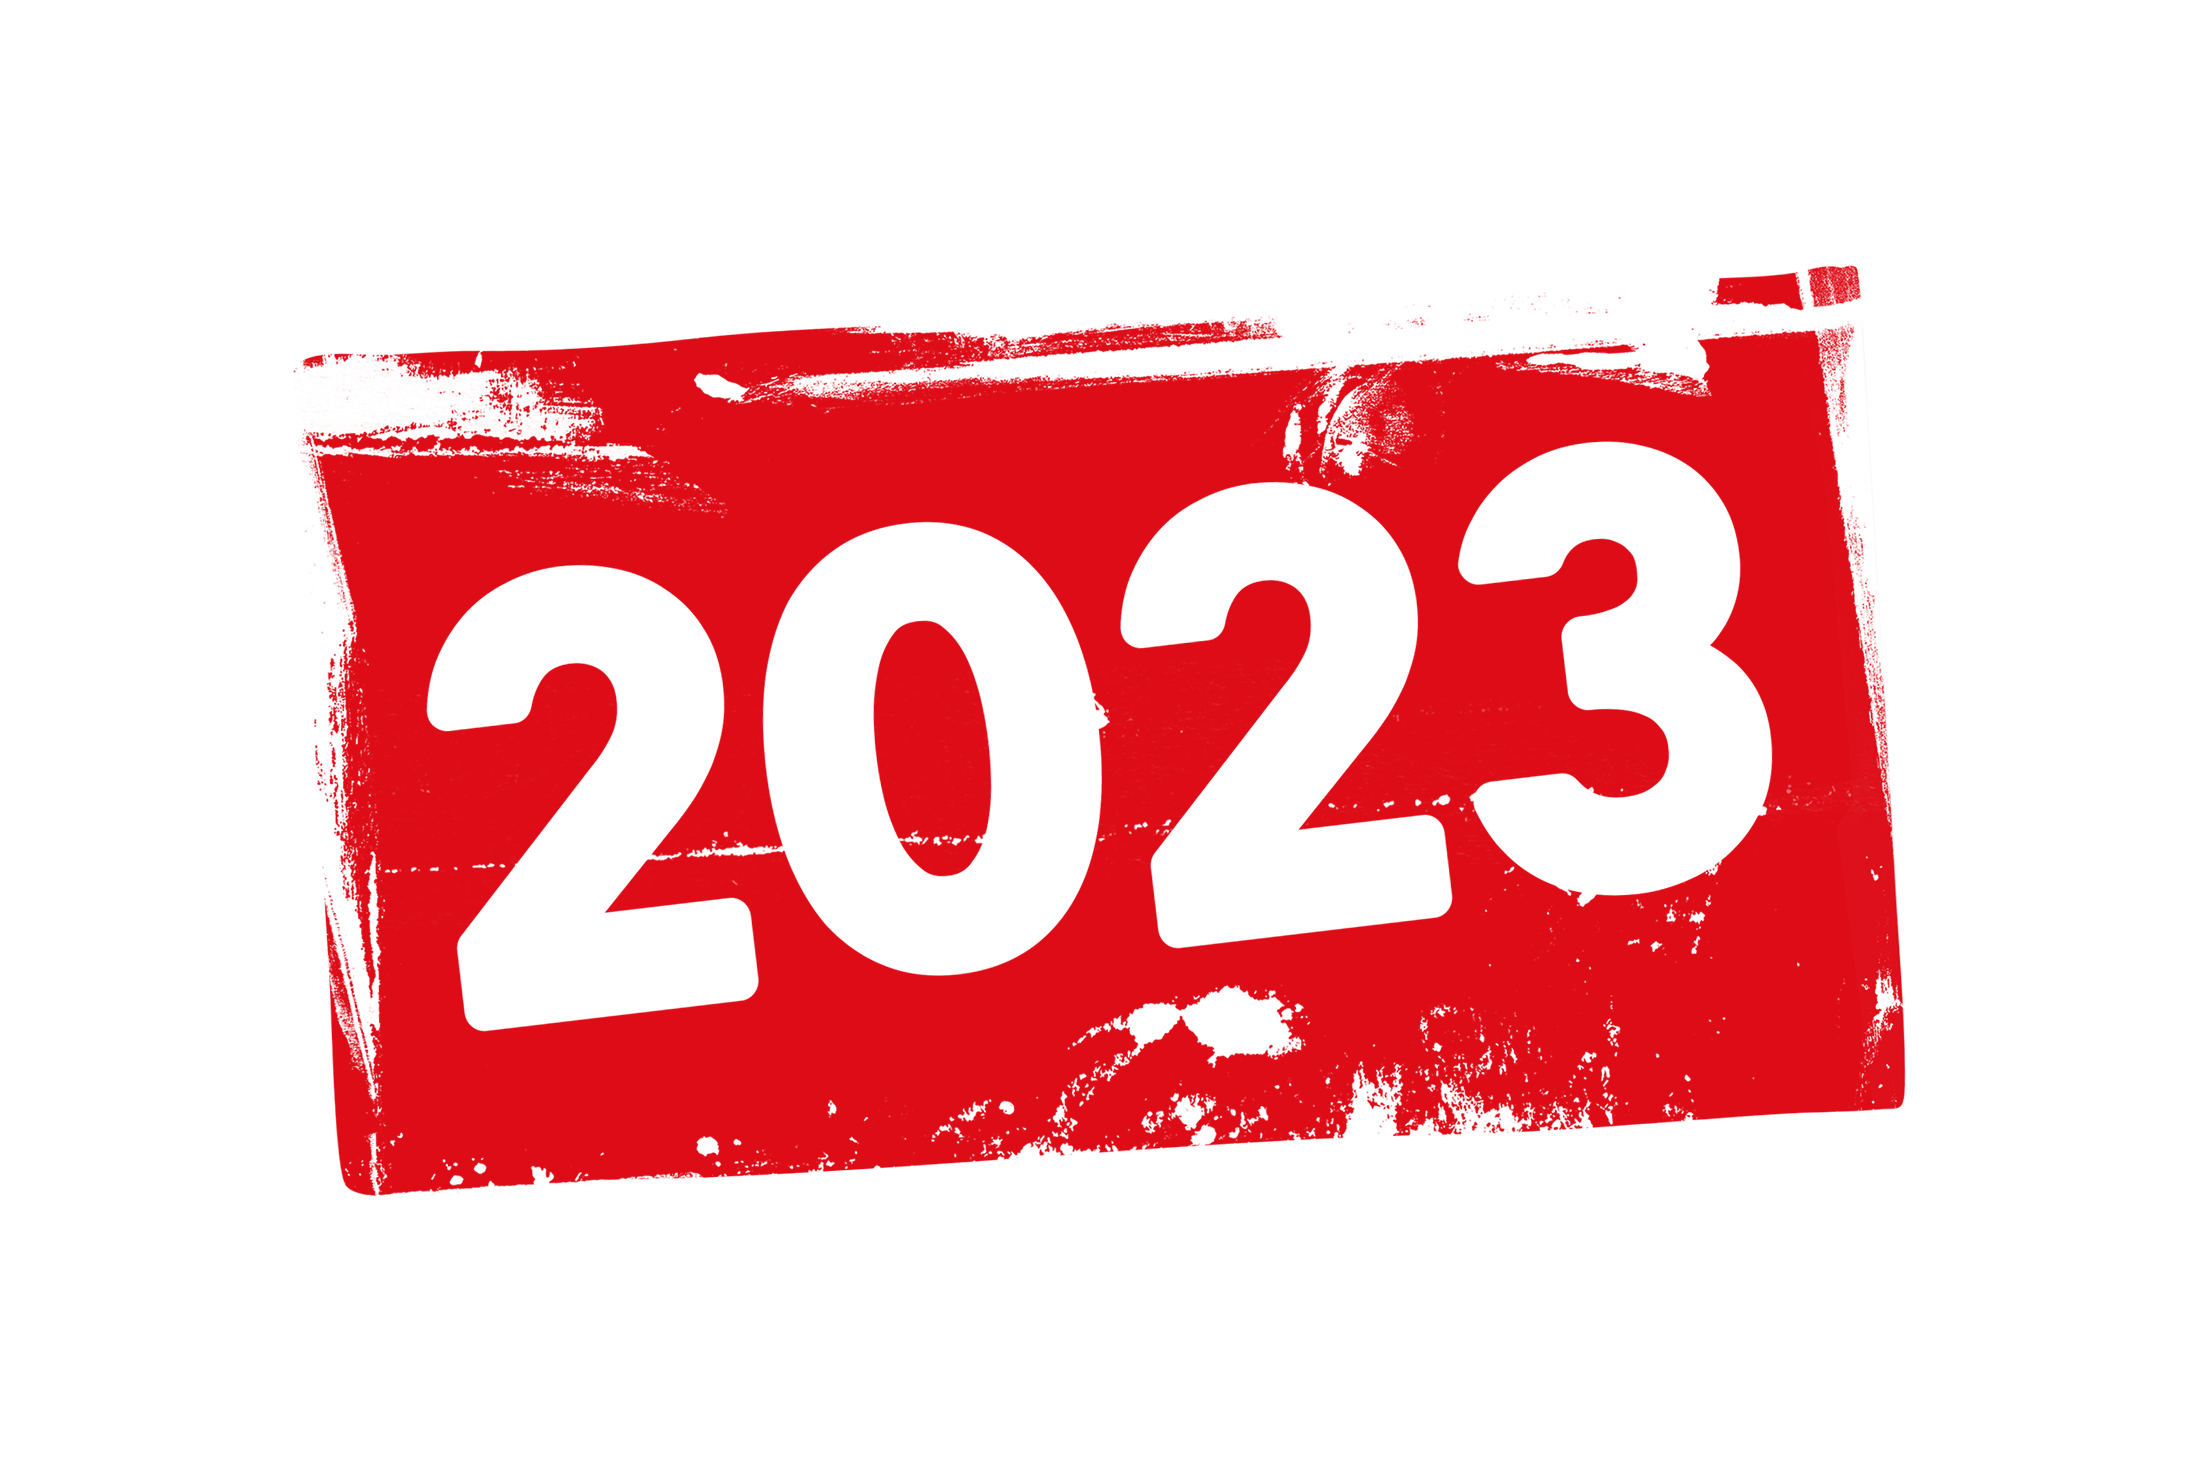 2023-png-transparent-background-images-pngteam